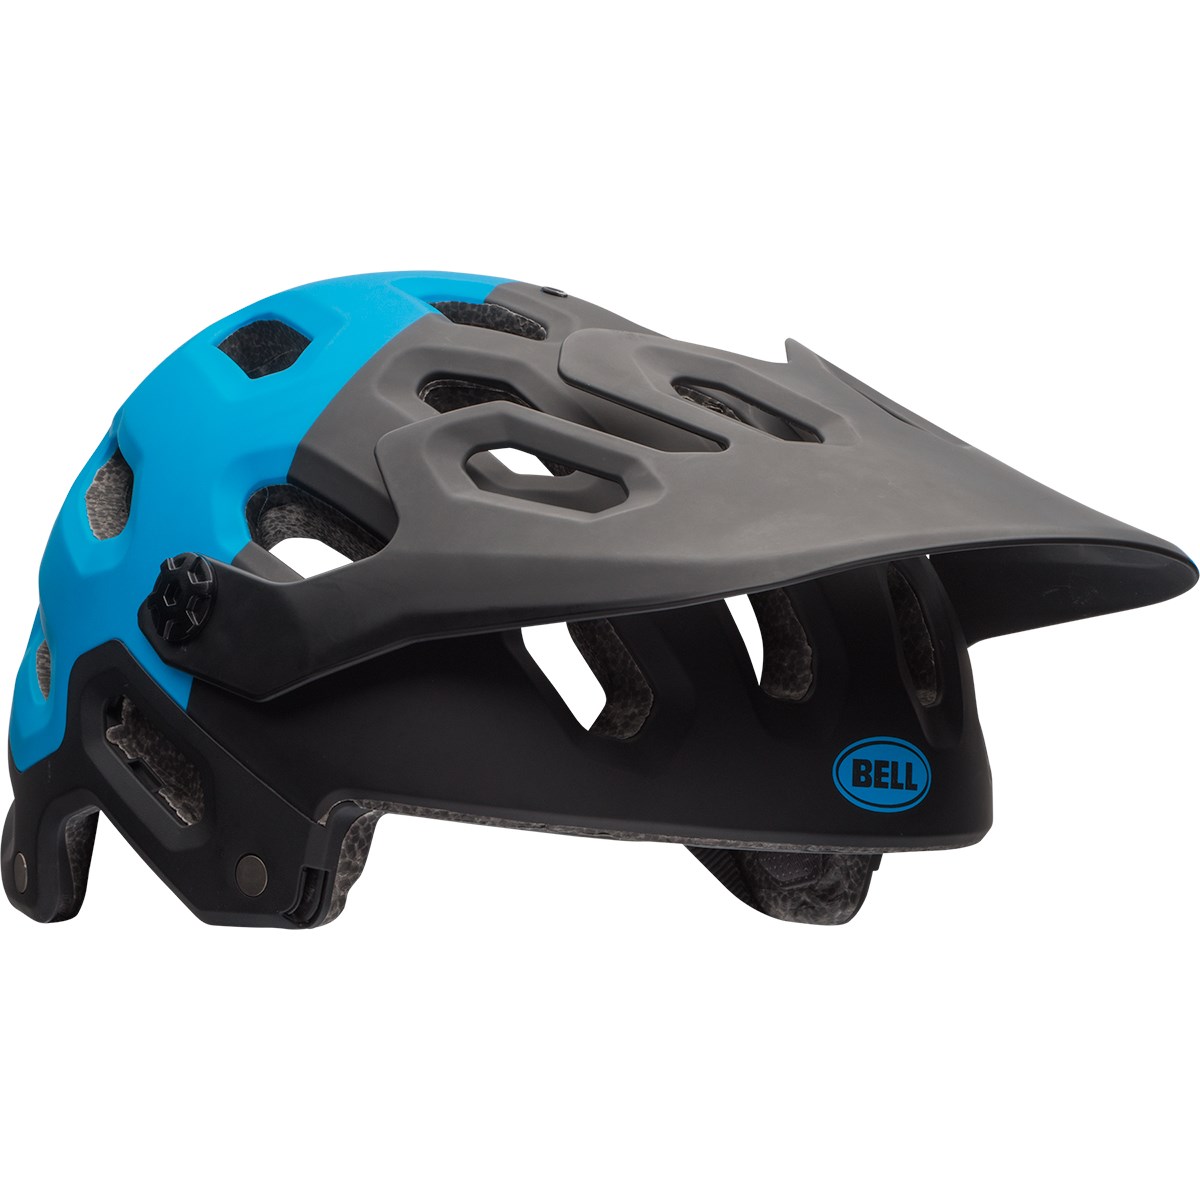 ondersteboven gezond verstand JEP Bell Super 2 Bike Helmet 2016 | evo